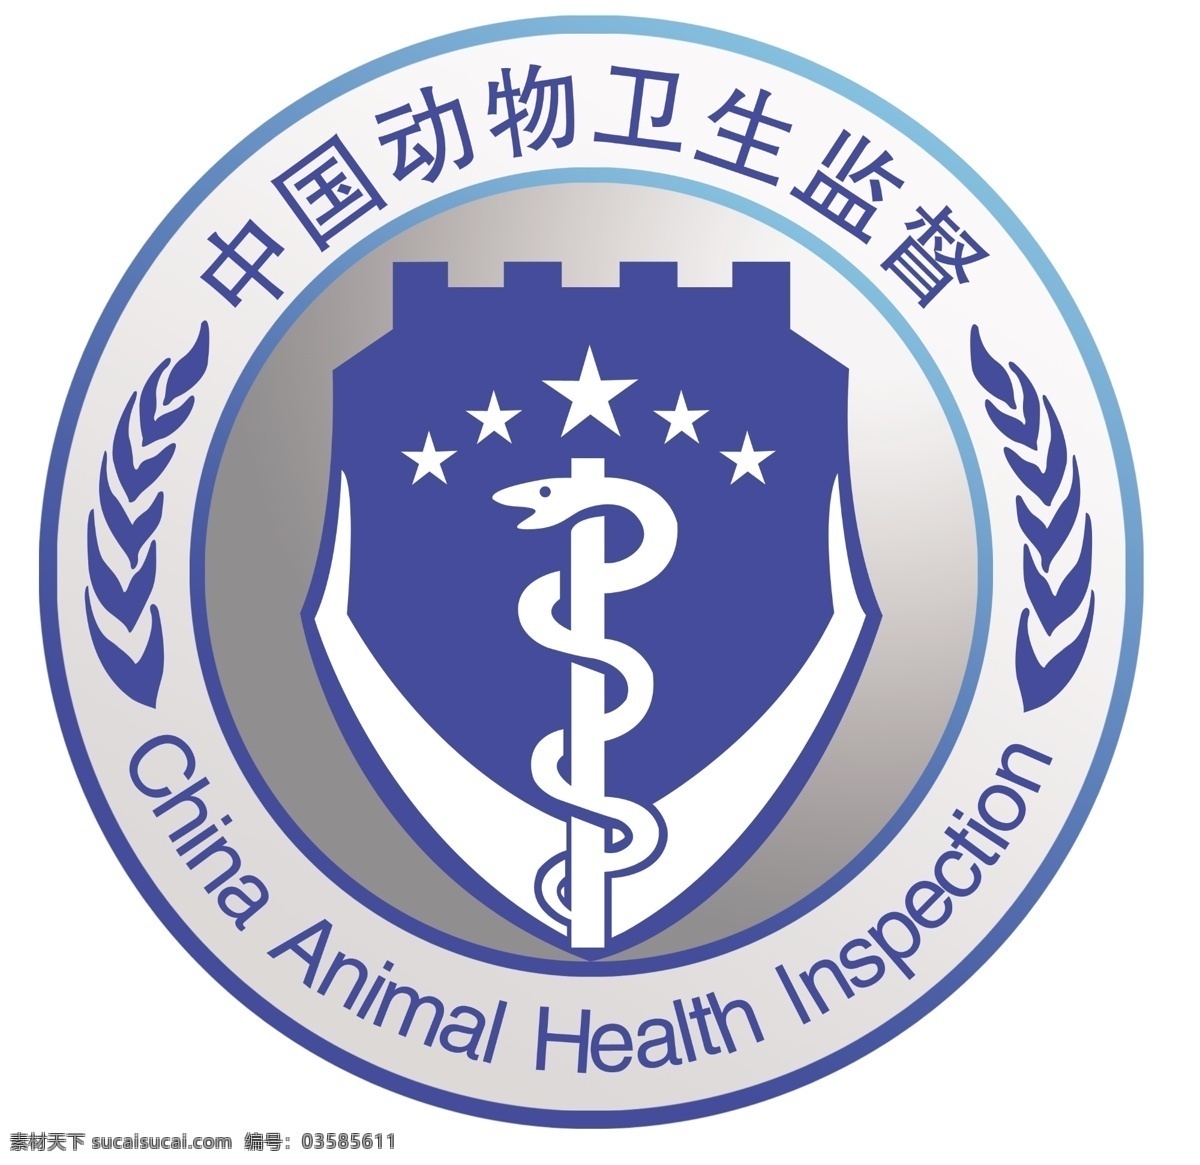 中国 动物 卫生监督 标志 文字 英文 国内广告设计 广告设计模板 源文件